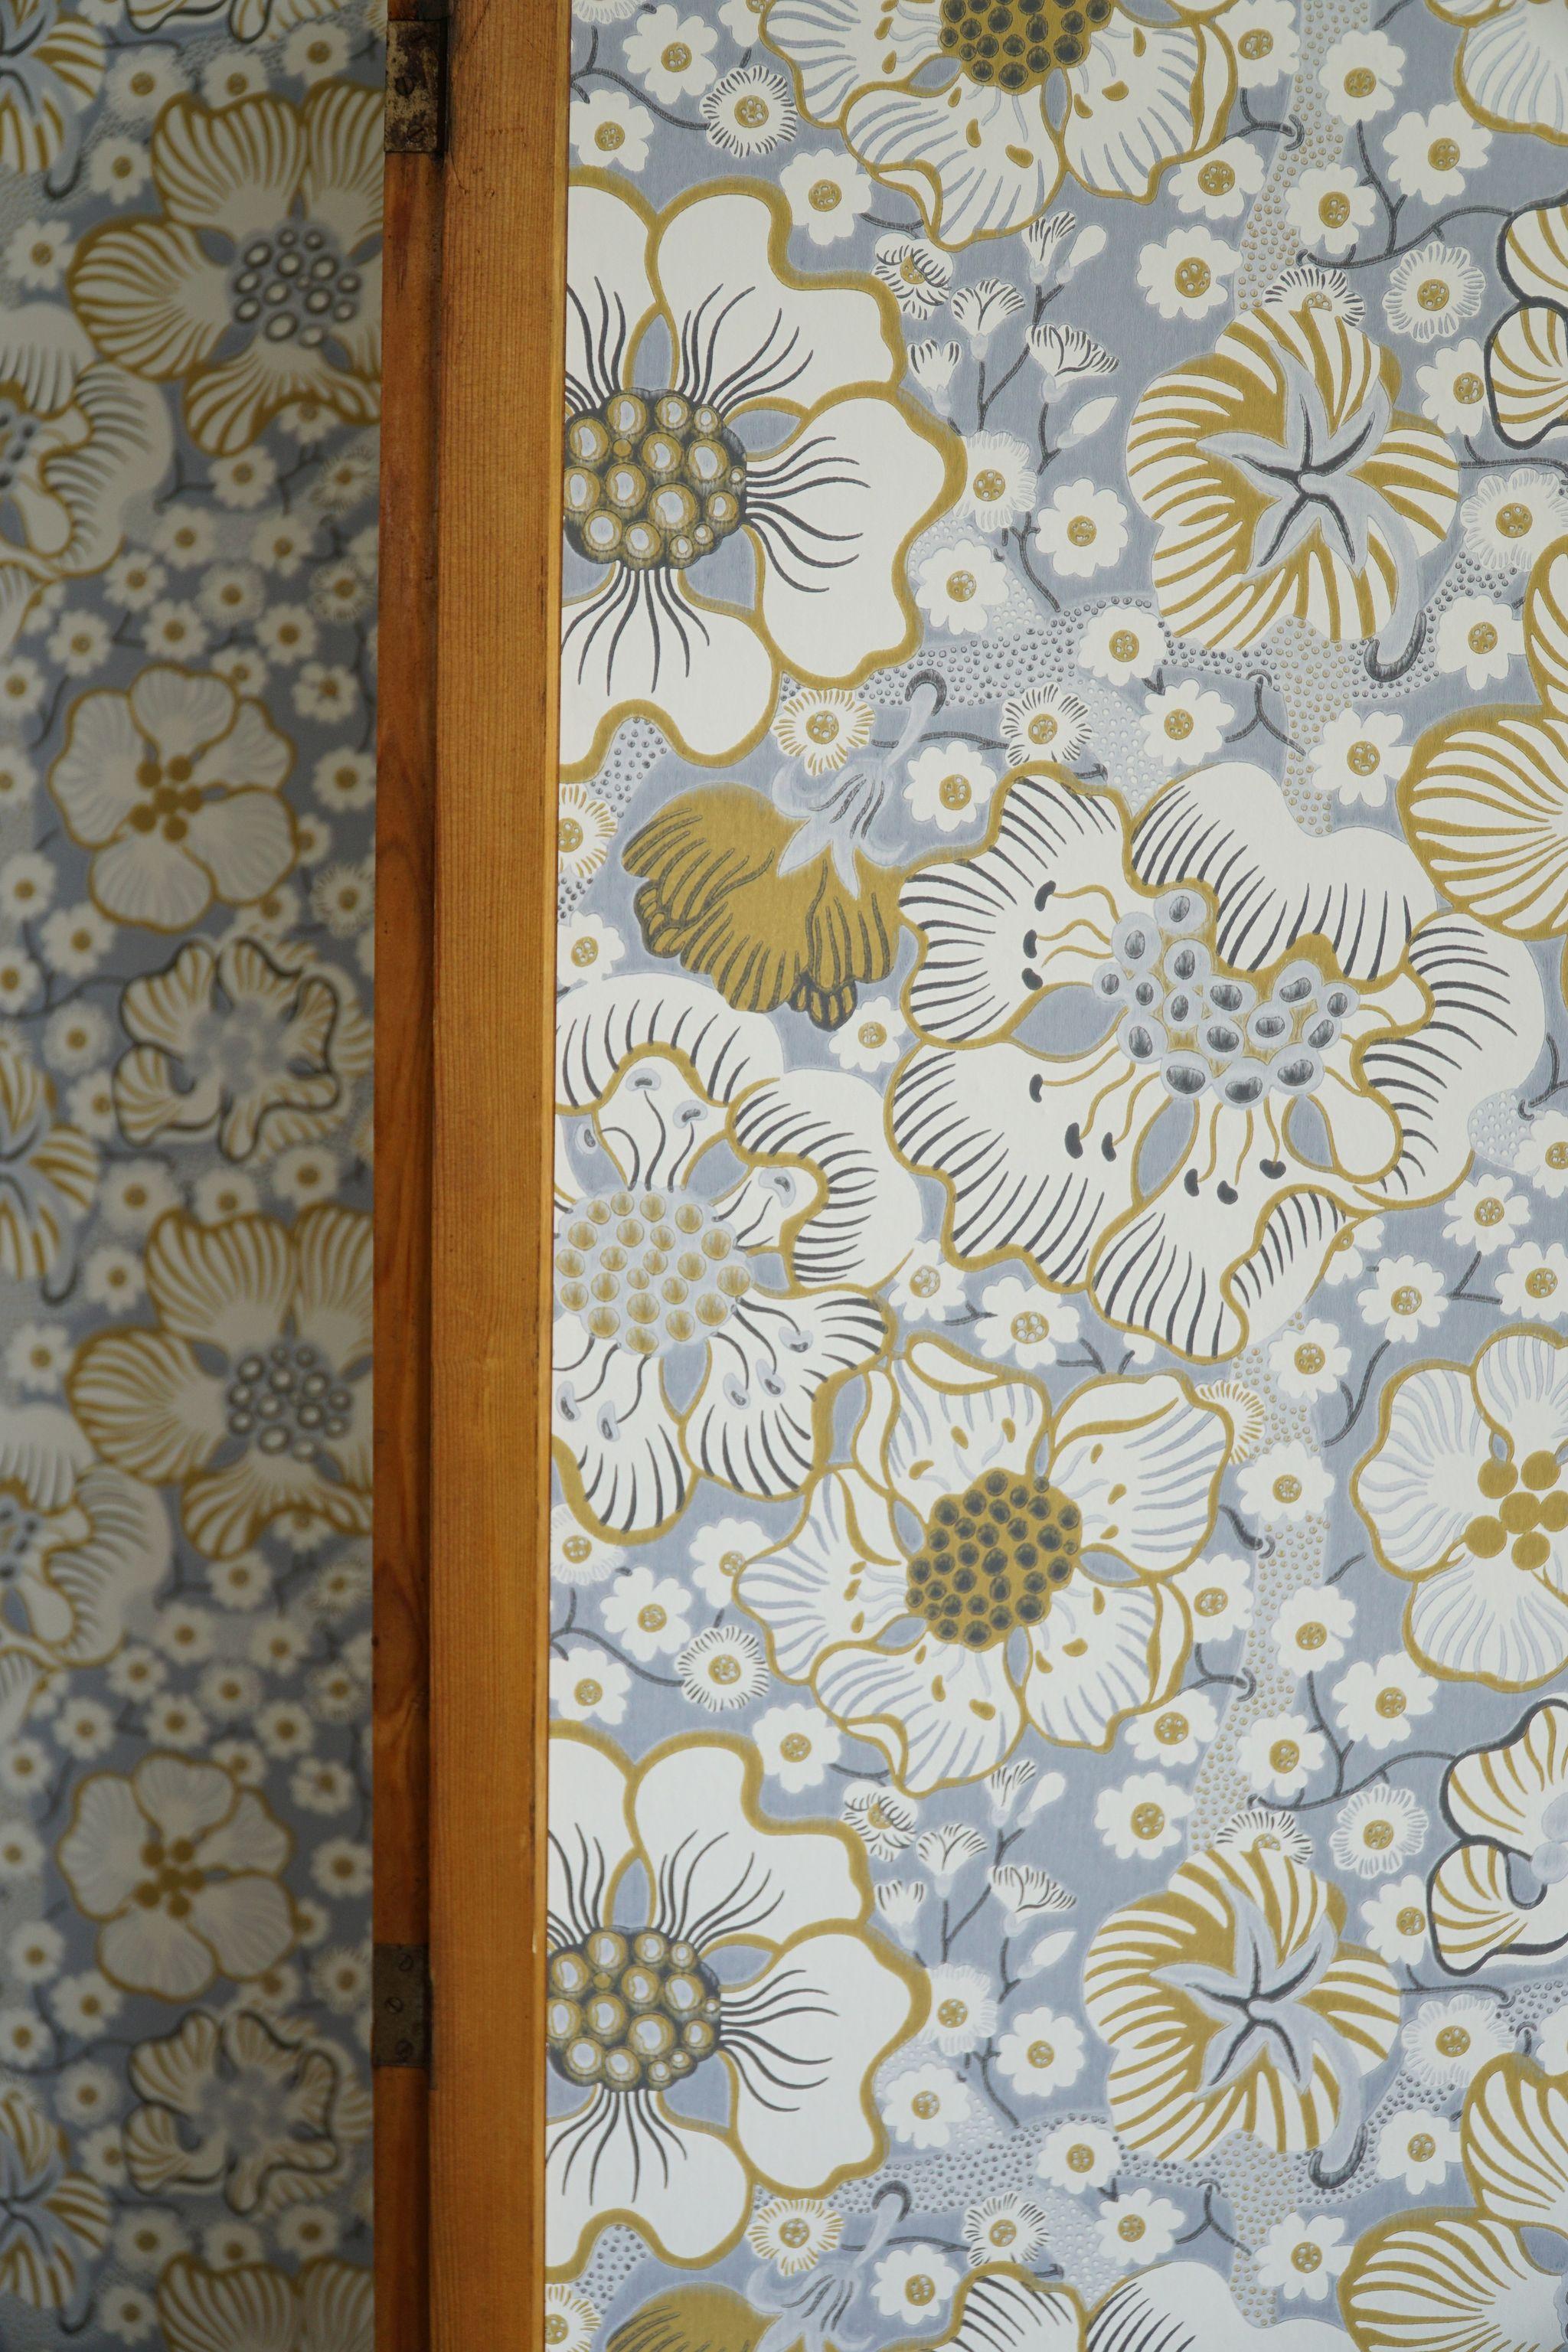 Fabric Swedish Modern Room Divider in Pine, Upholstered in Svenskt Tenn, Made in 1960s